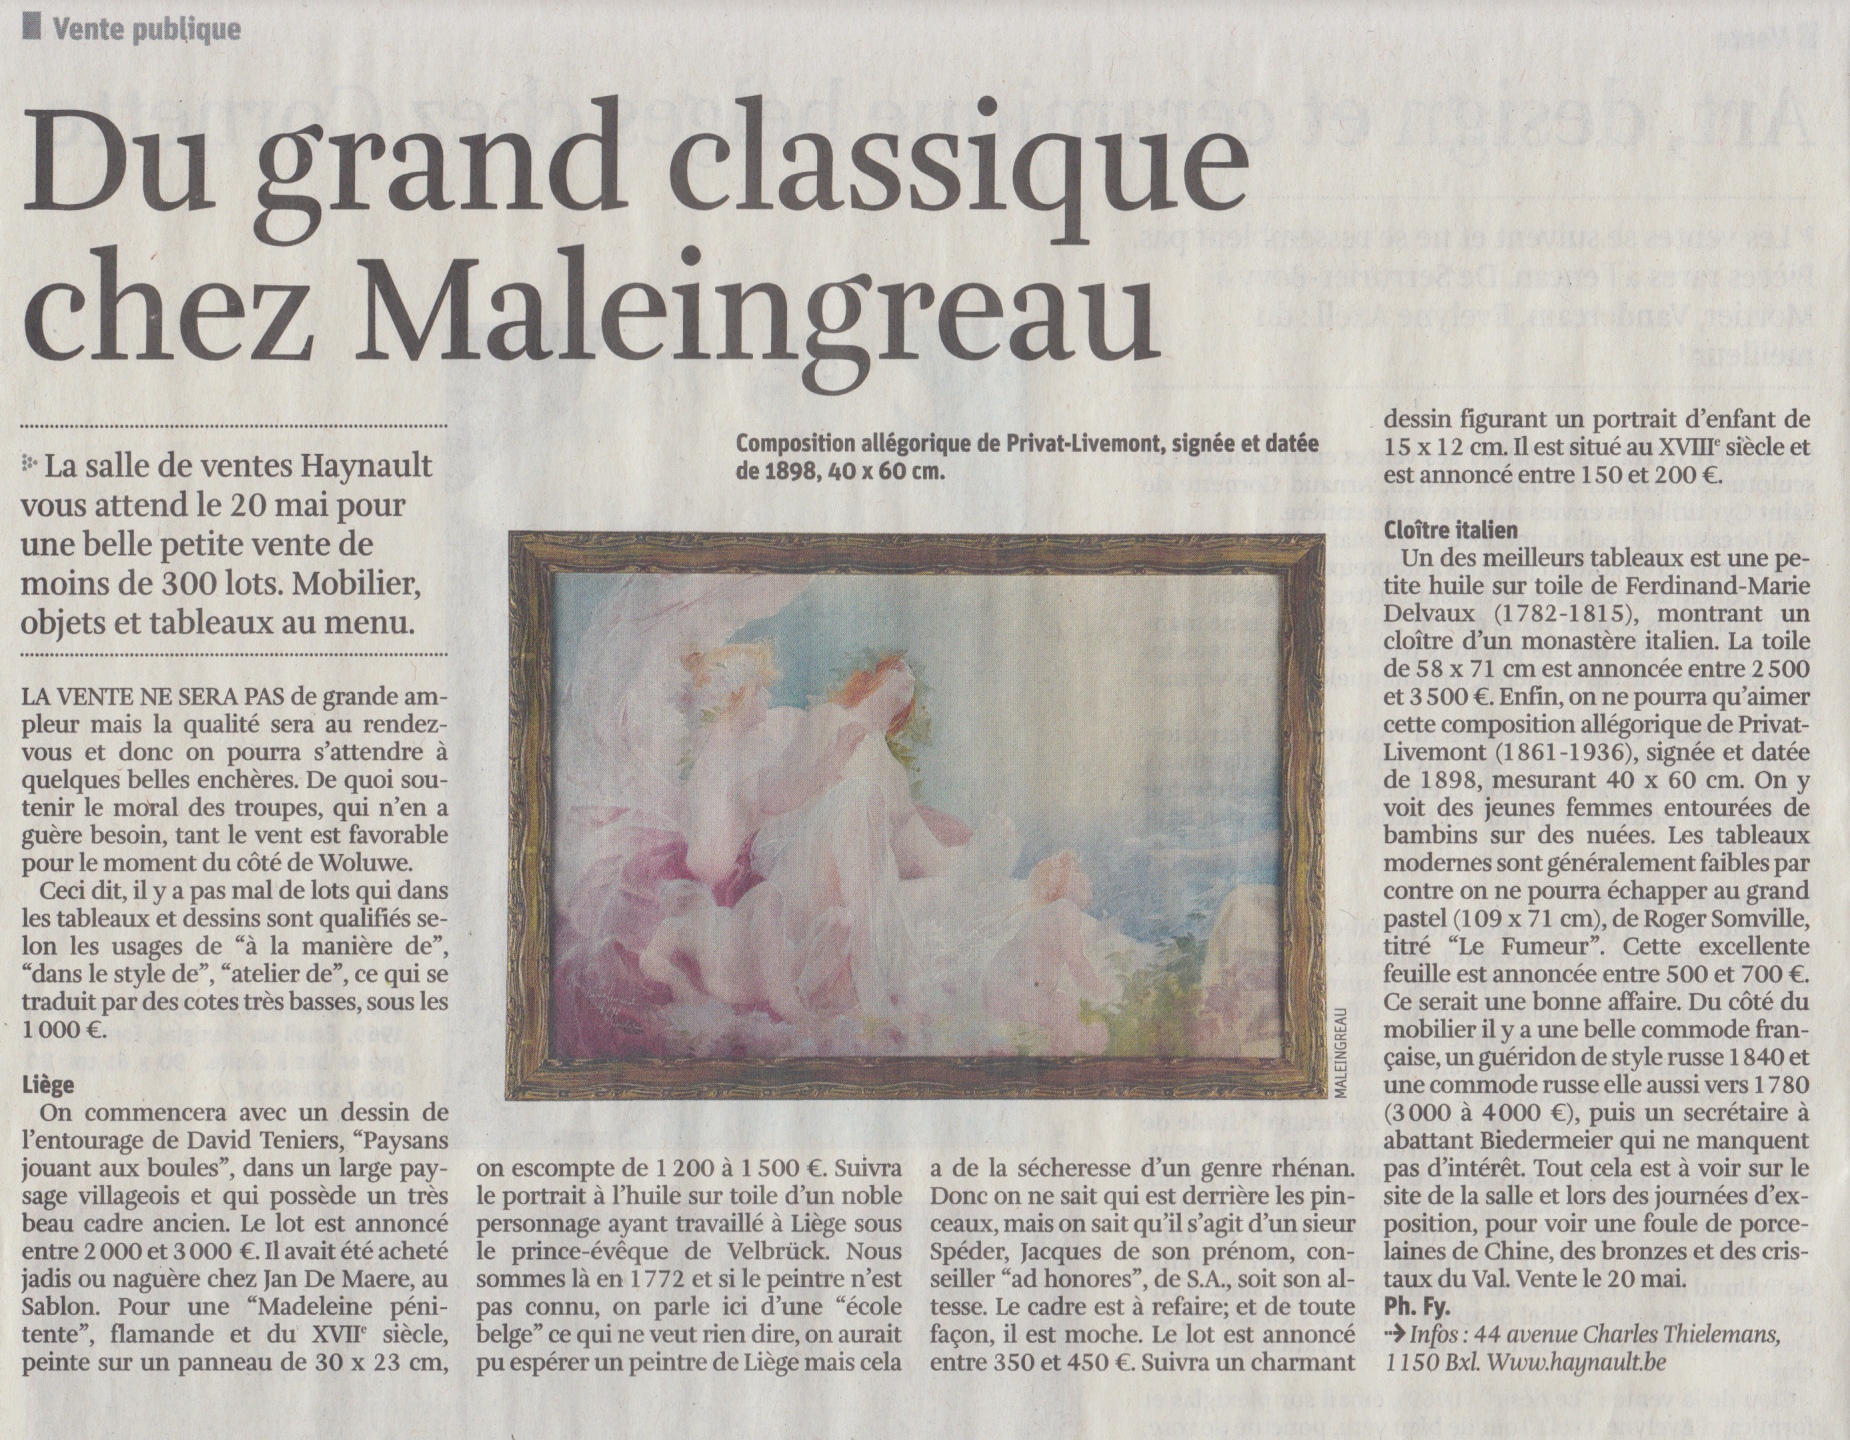 Du grand classique chez Maleingreau - La Libre Belgique - Mercredi 17 mai 2017